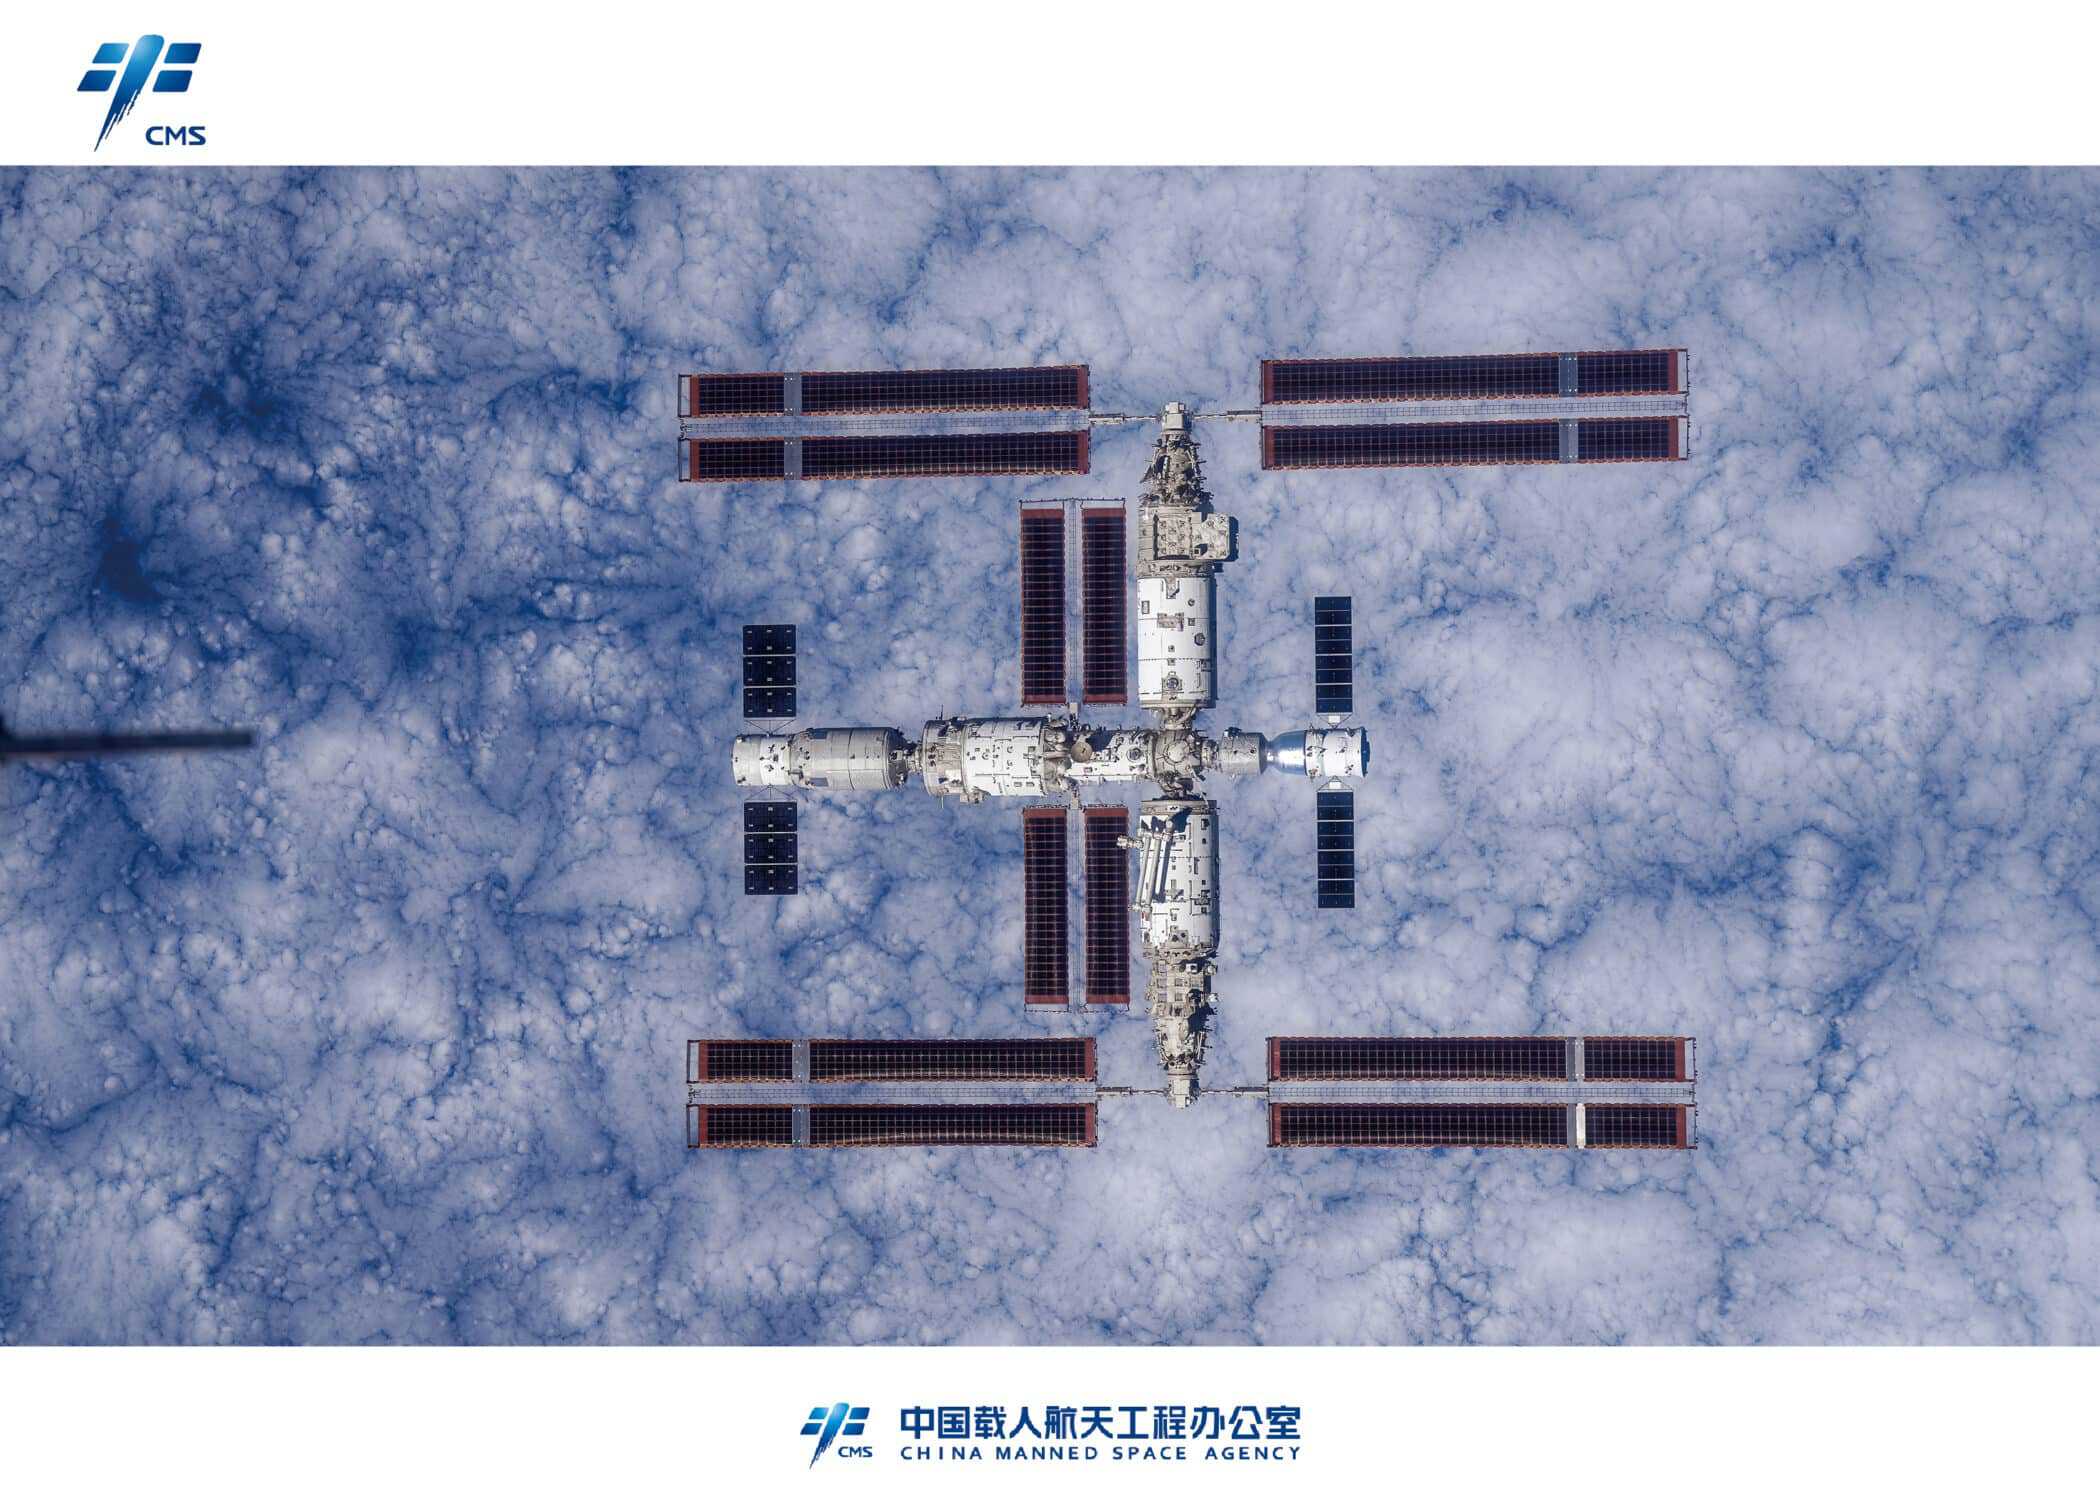 中国が軌道上から見た天宮宇宙ステーションの画像を公開